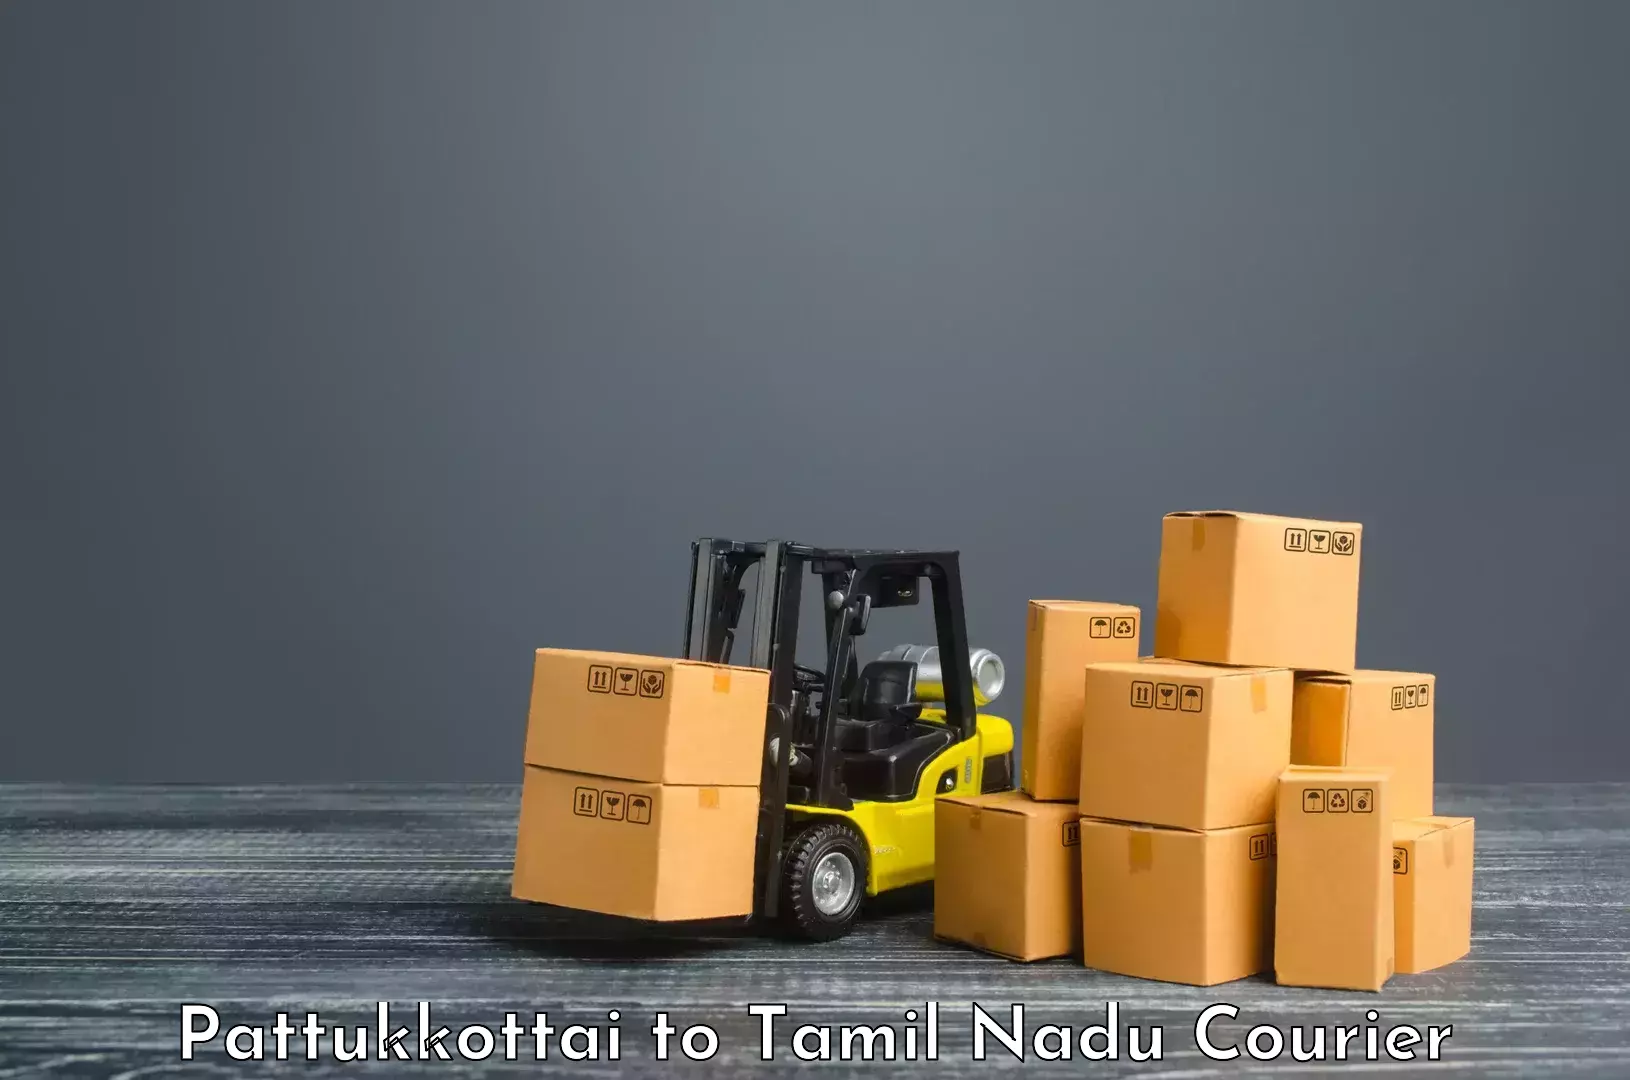 Reliable shipping partners Pattukkottai to Thiruvarur